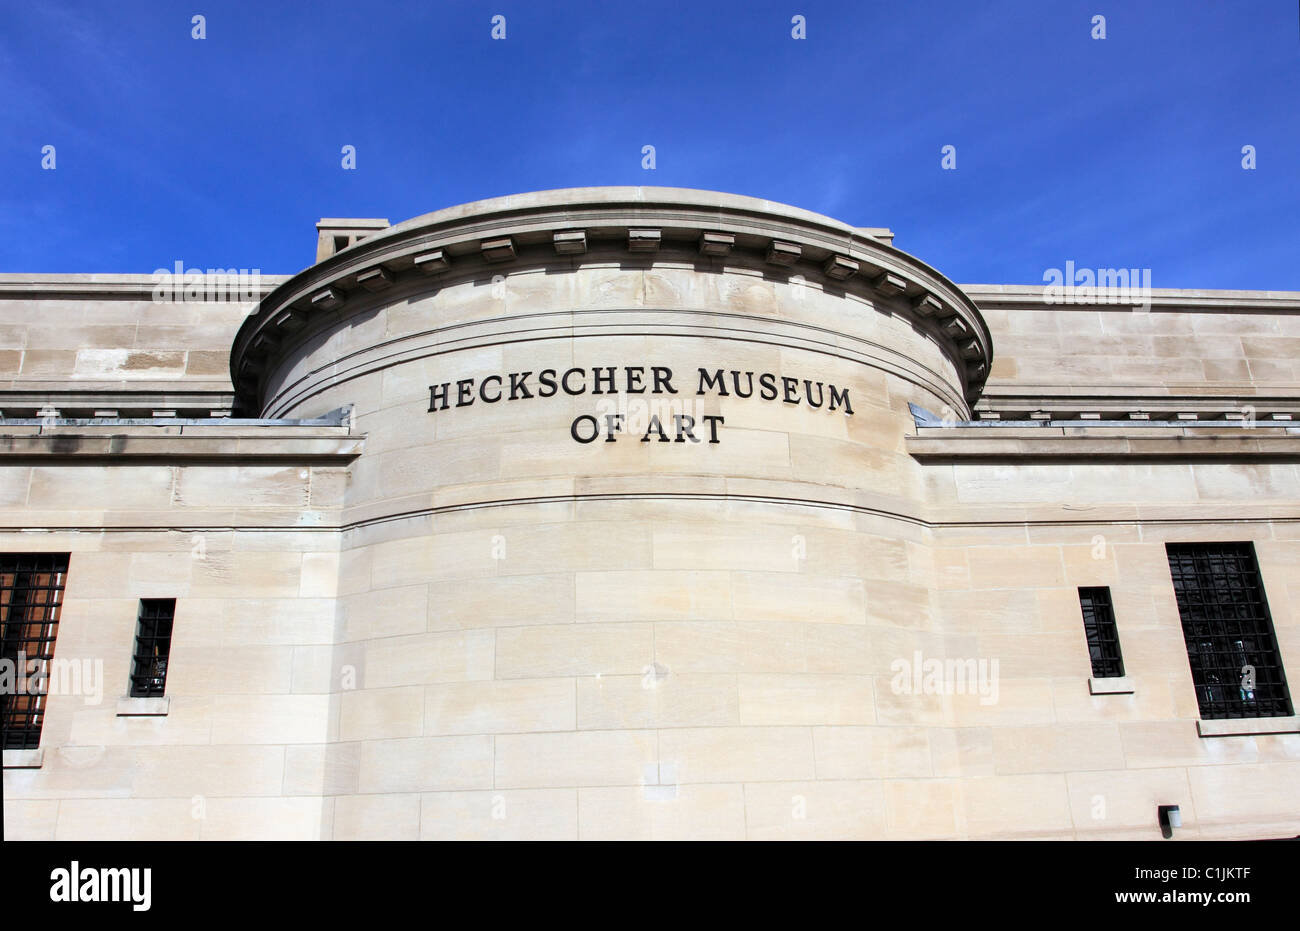 The Heckscher Museum Of Art Exhibit